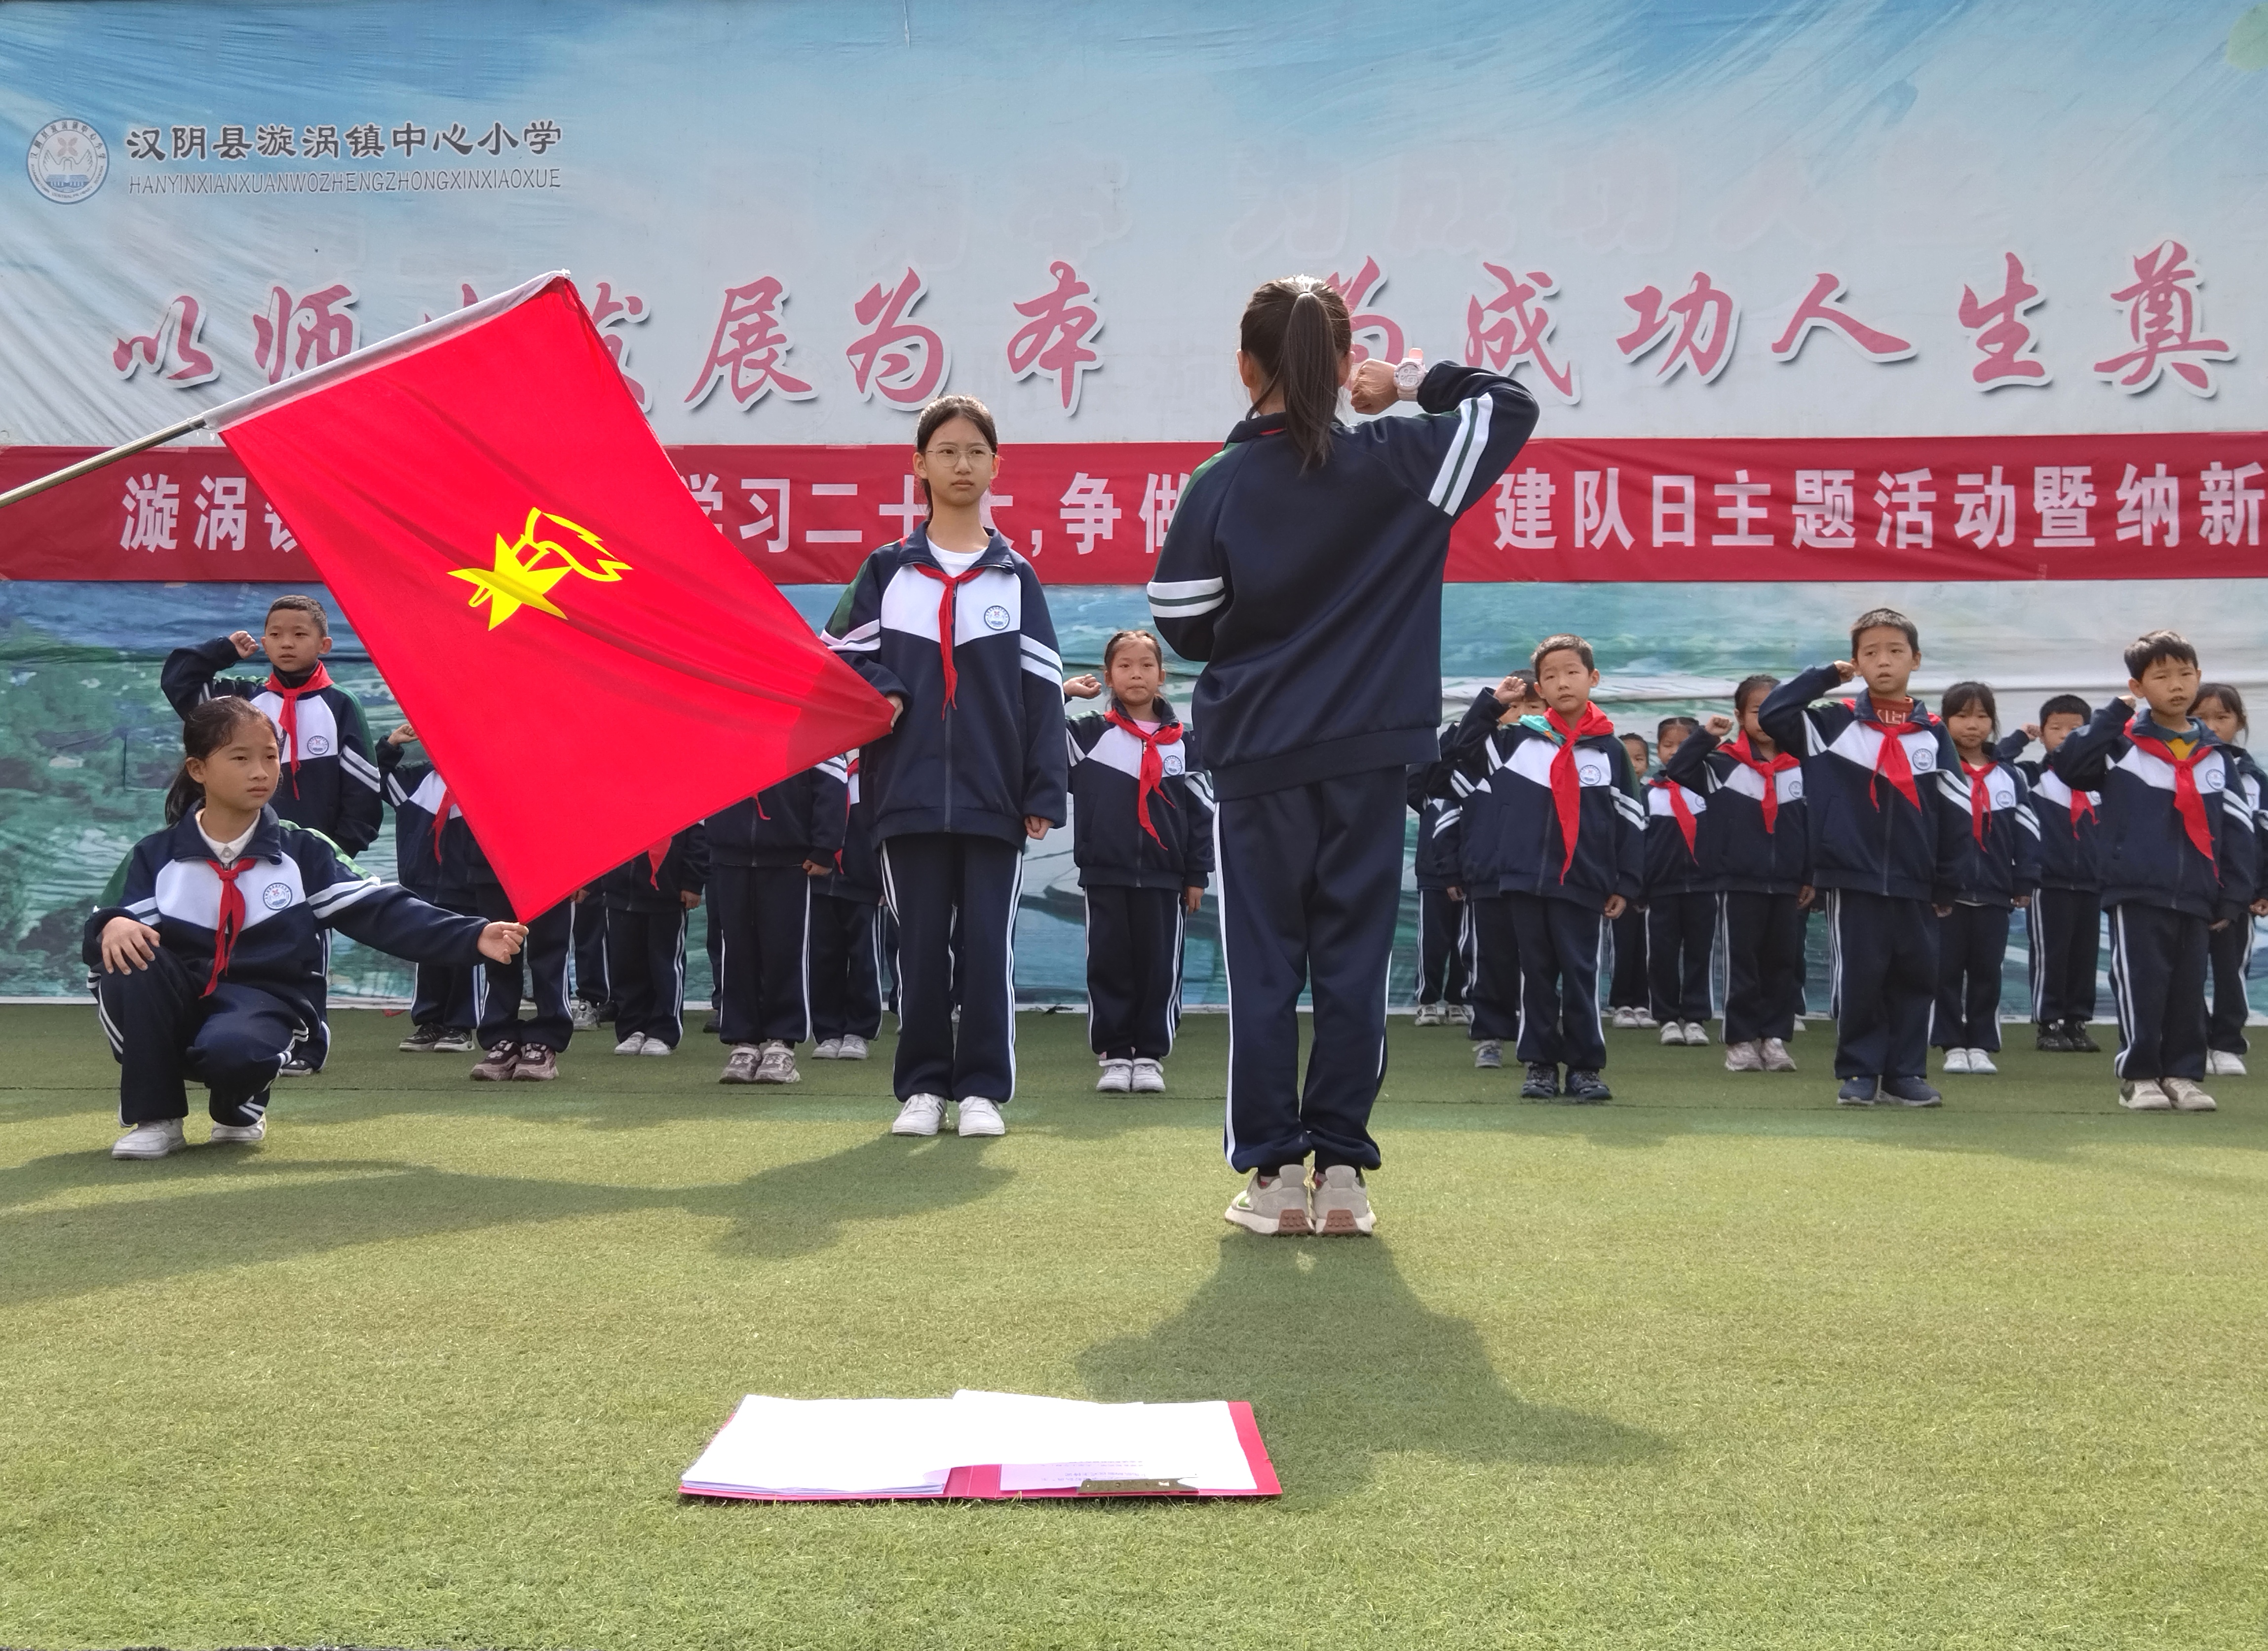 汉阴县漩涡镇中心小学举行“争做新时代好队员”建队日主题活动